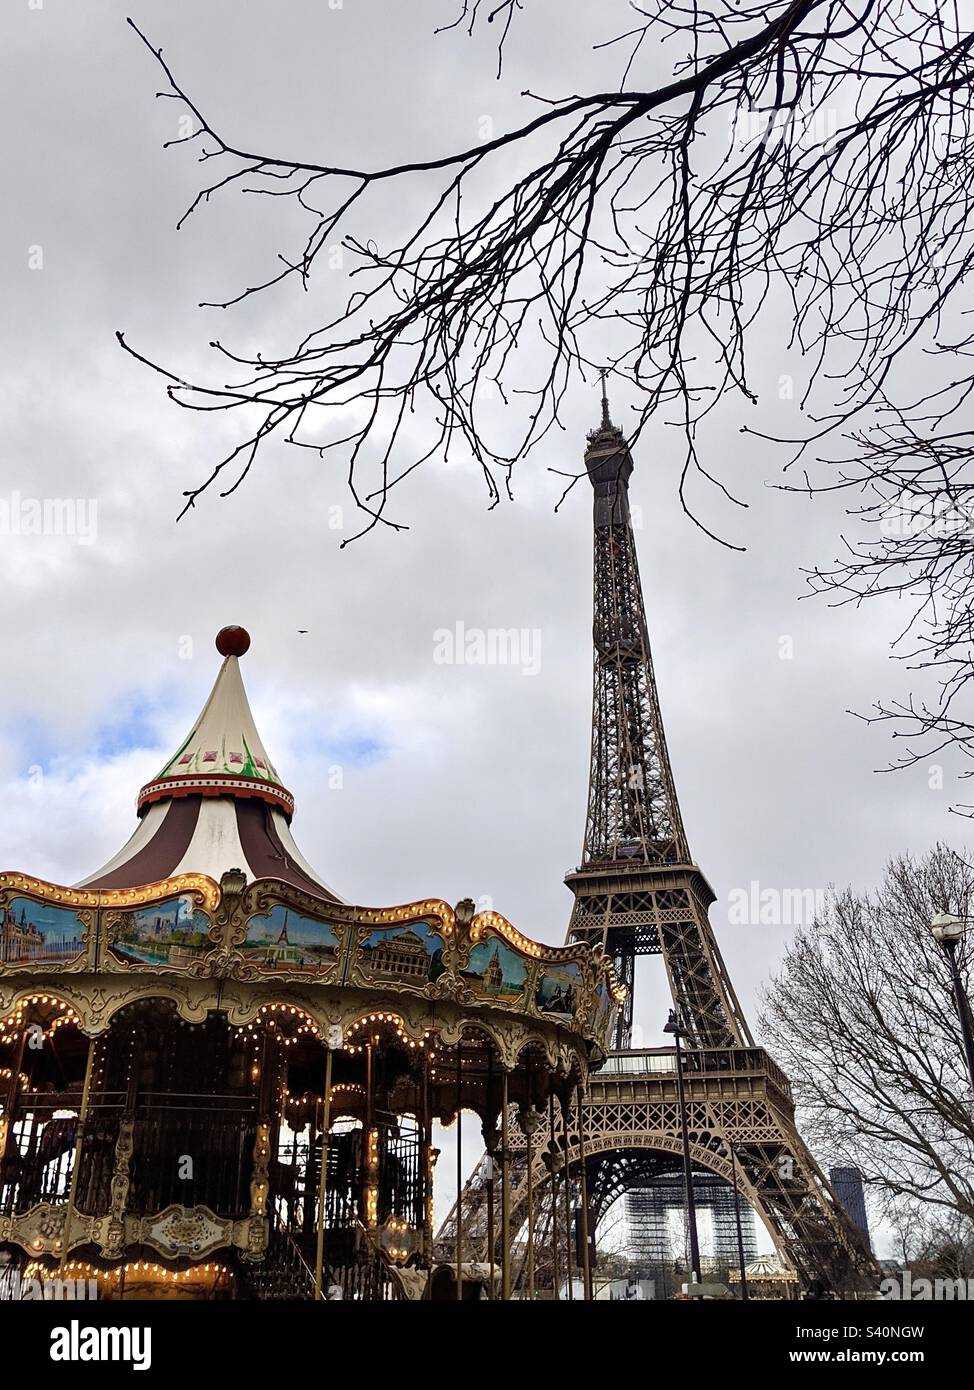 Karussell auf dem Weg zum Eiffelturm in Paris, Frankreich Stockfoto